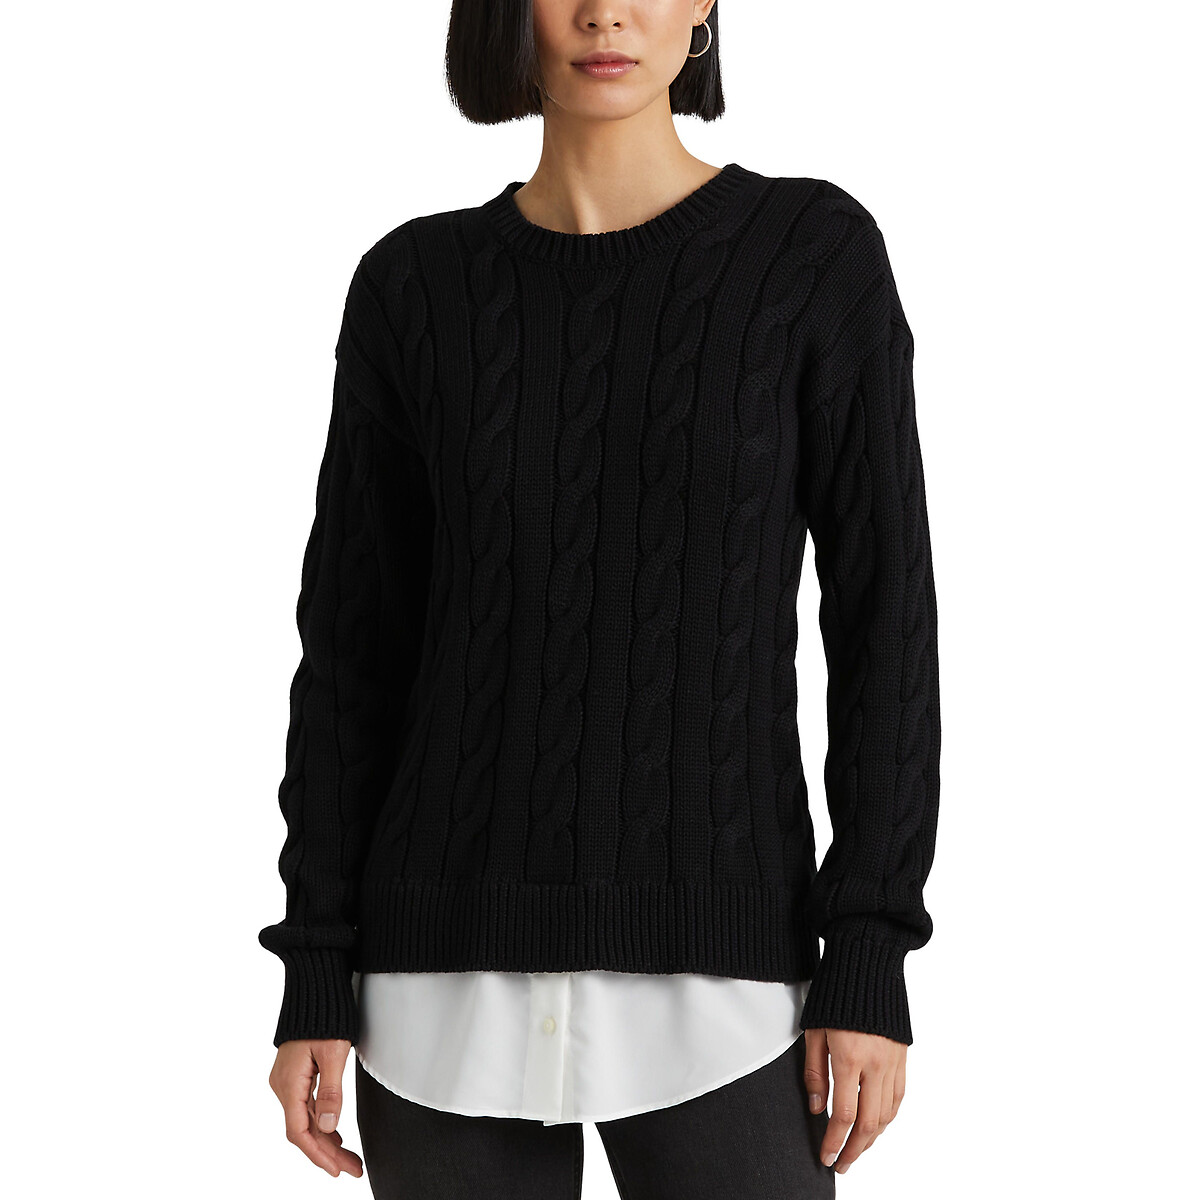 Пуловер с круглым вырезом из плетеного трикотажа S черный пуловер с круглым вырезом из трикотажа крупной вязки hanapark s черный